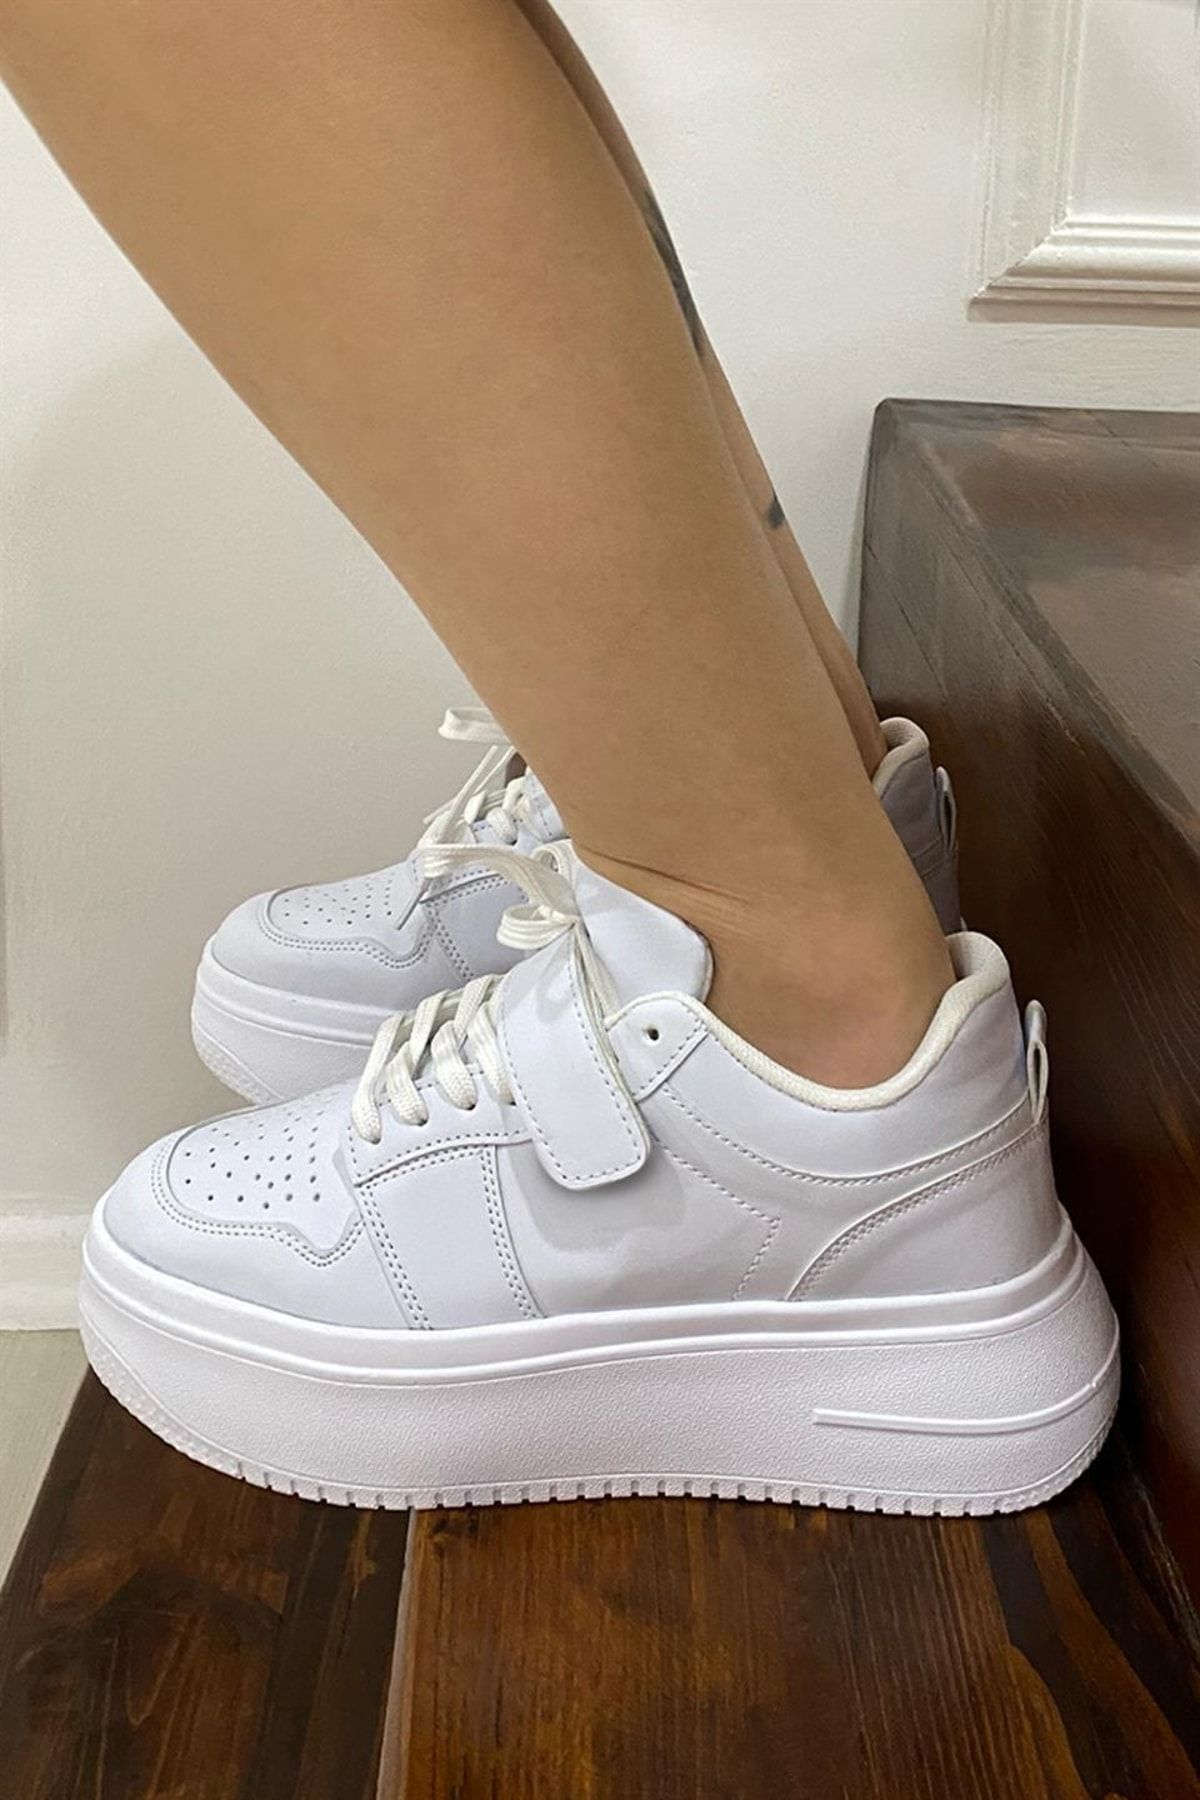 NAVYSIDE Kadın Beyaz Spor Ayakkabı Yüksek Tabanlı-5 Cm-hafif Yürüyüş Ayakkabısı Sneakers